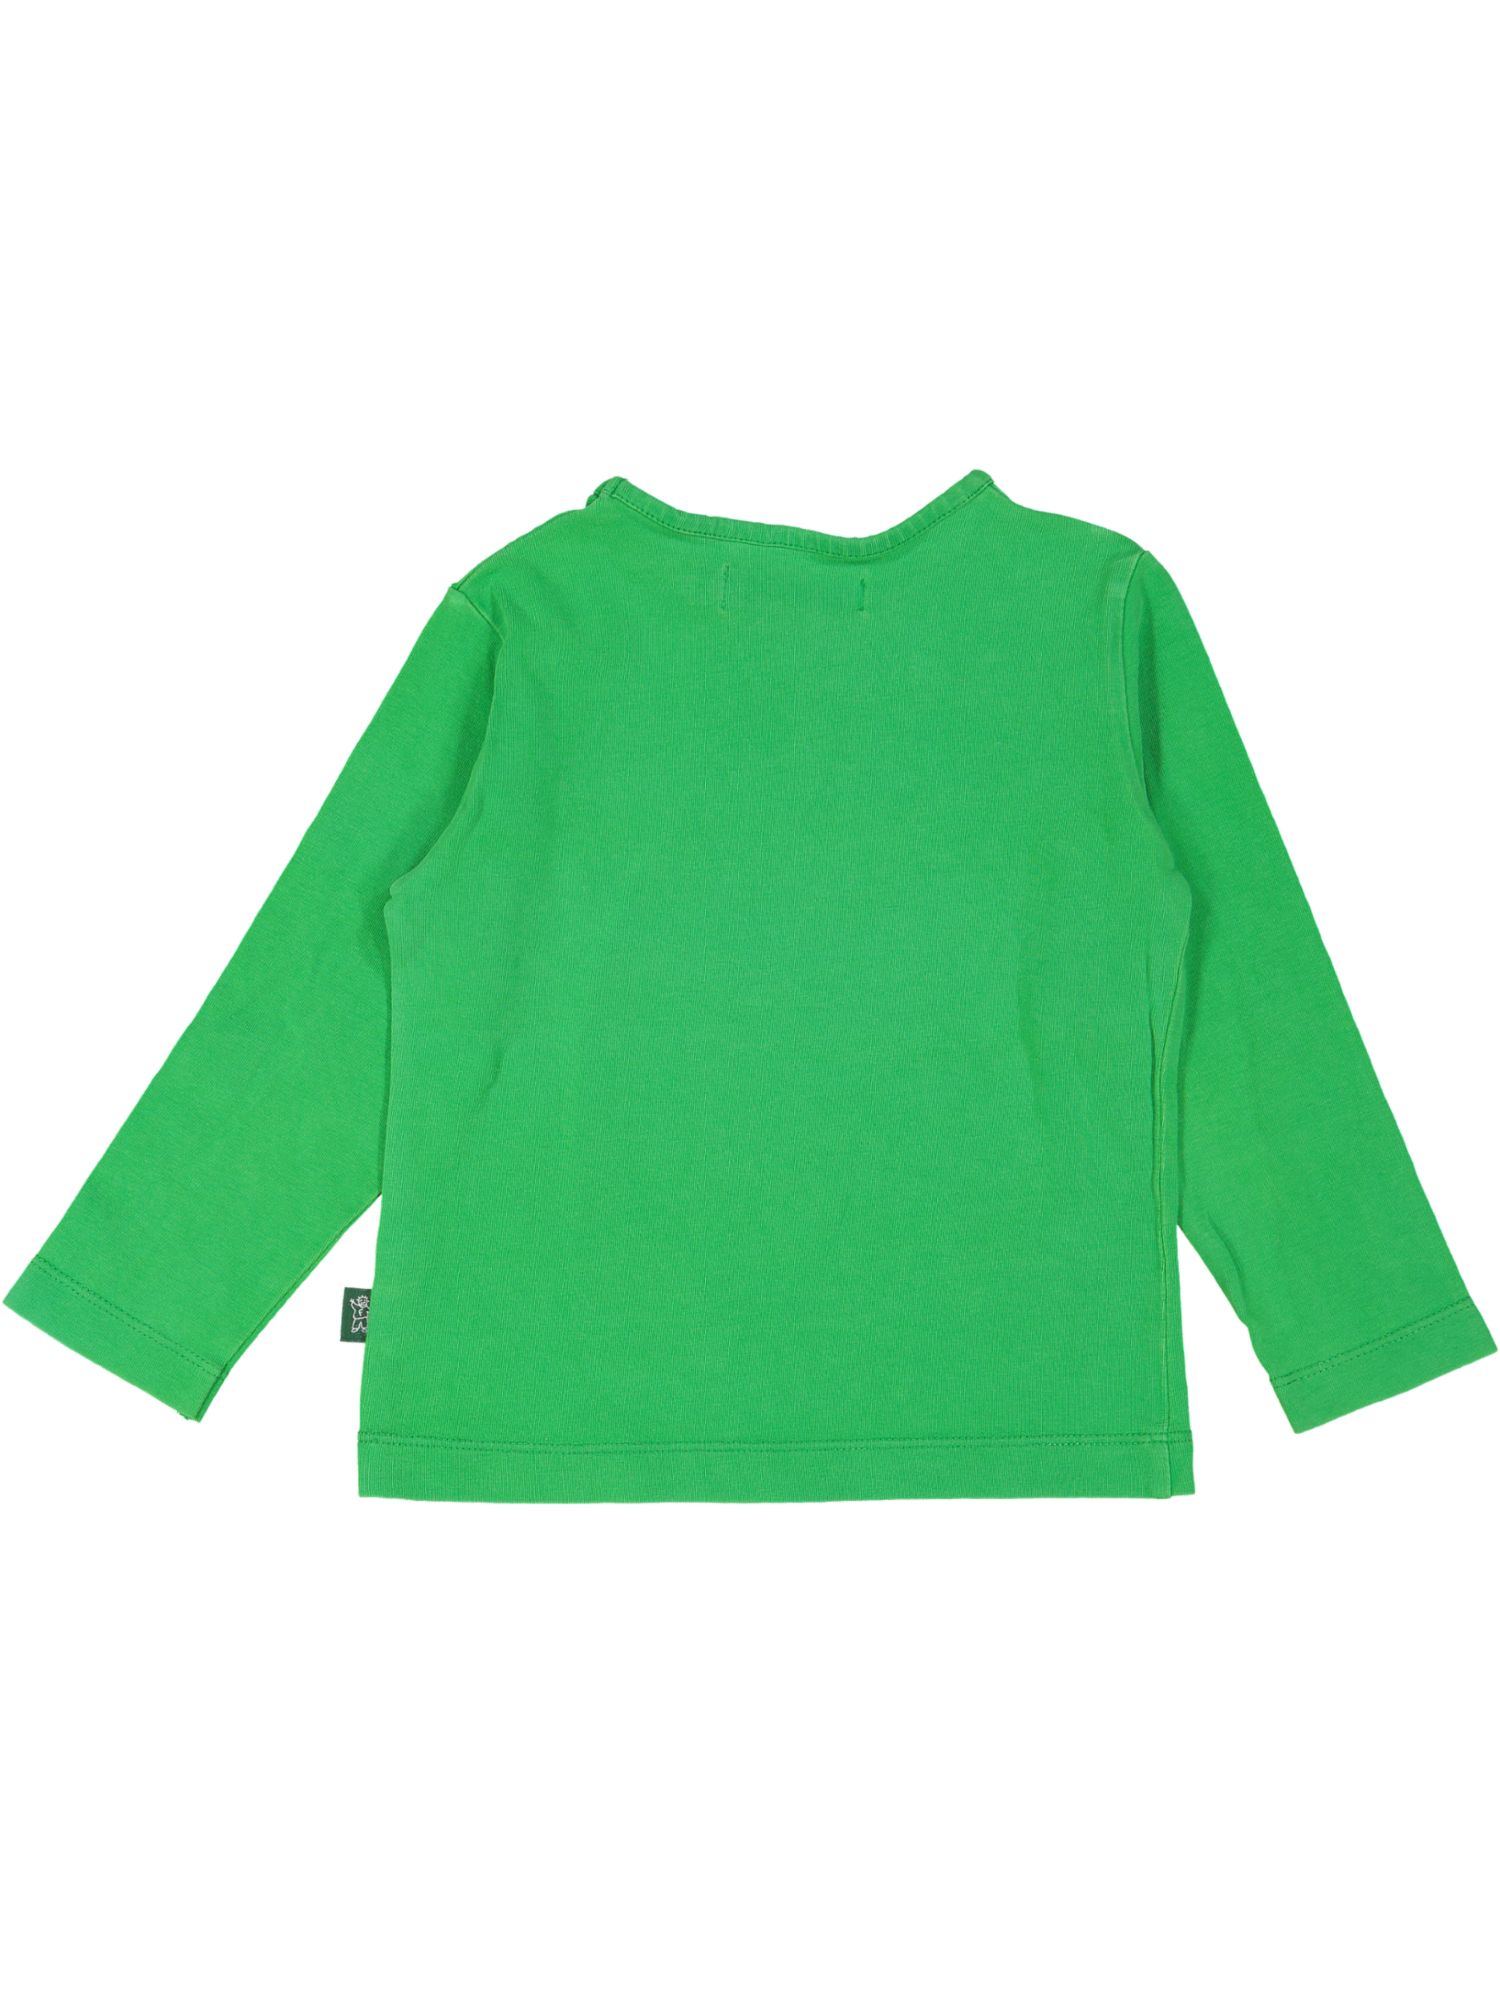 t-shirt groen meisje 02j .